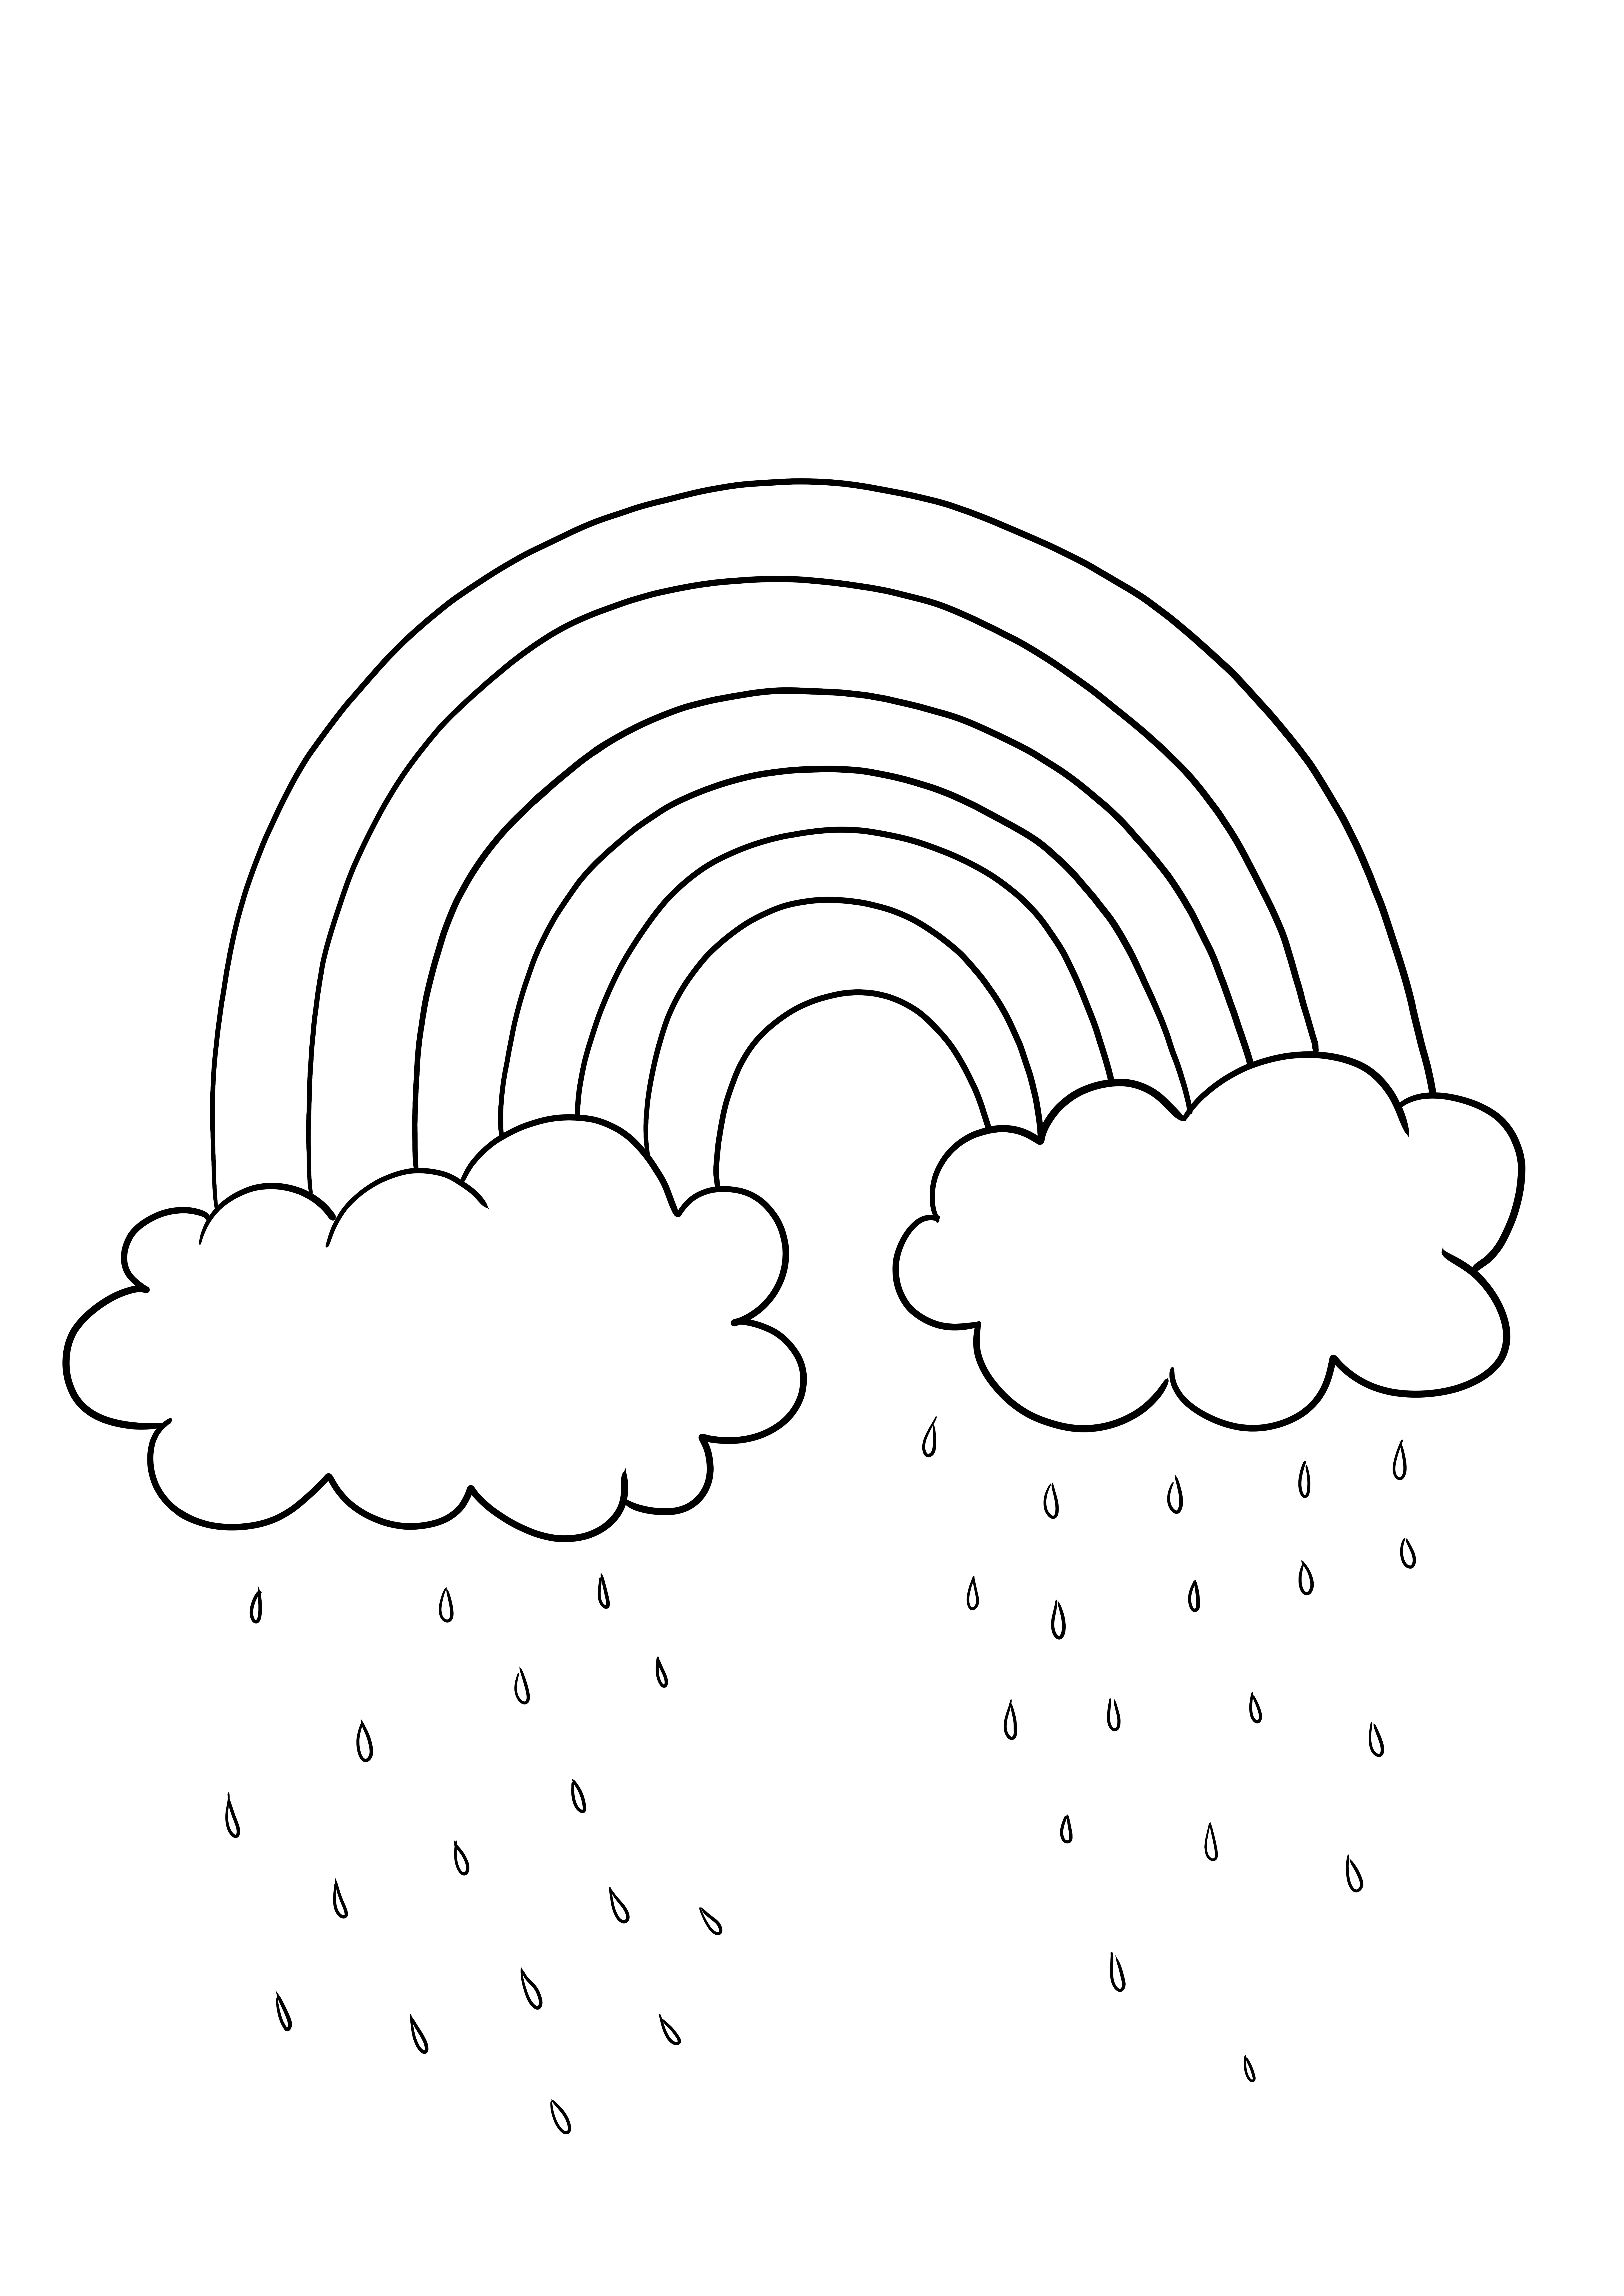 Yağmur-gökkuşağı-bulutlar-baharda hava boyama sayfası ücretsiz baskı